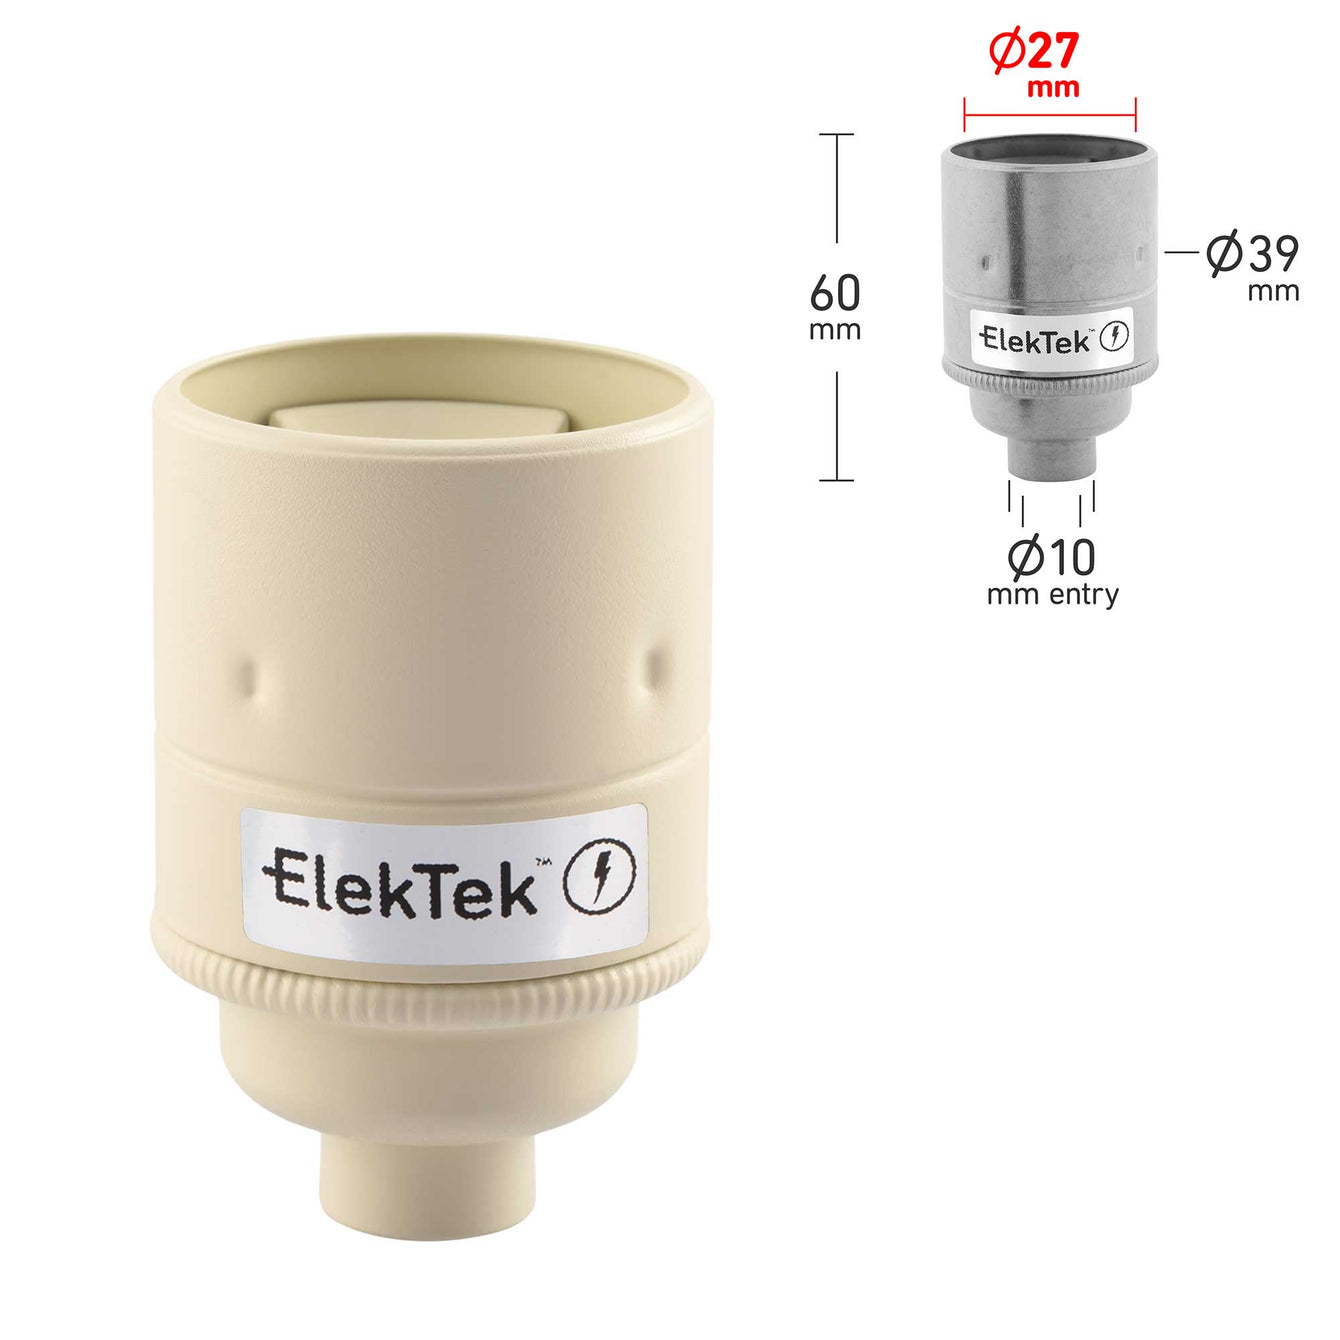 ElekTek ES Edison Screw E27 Lamp Holder Plain Skirt 10mm or Half Inch Entry Ideal for Vintage Filament Bulbs Brass - Buy It Better Antique White / 10mm